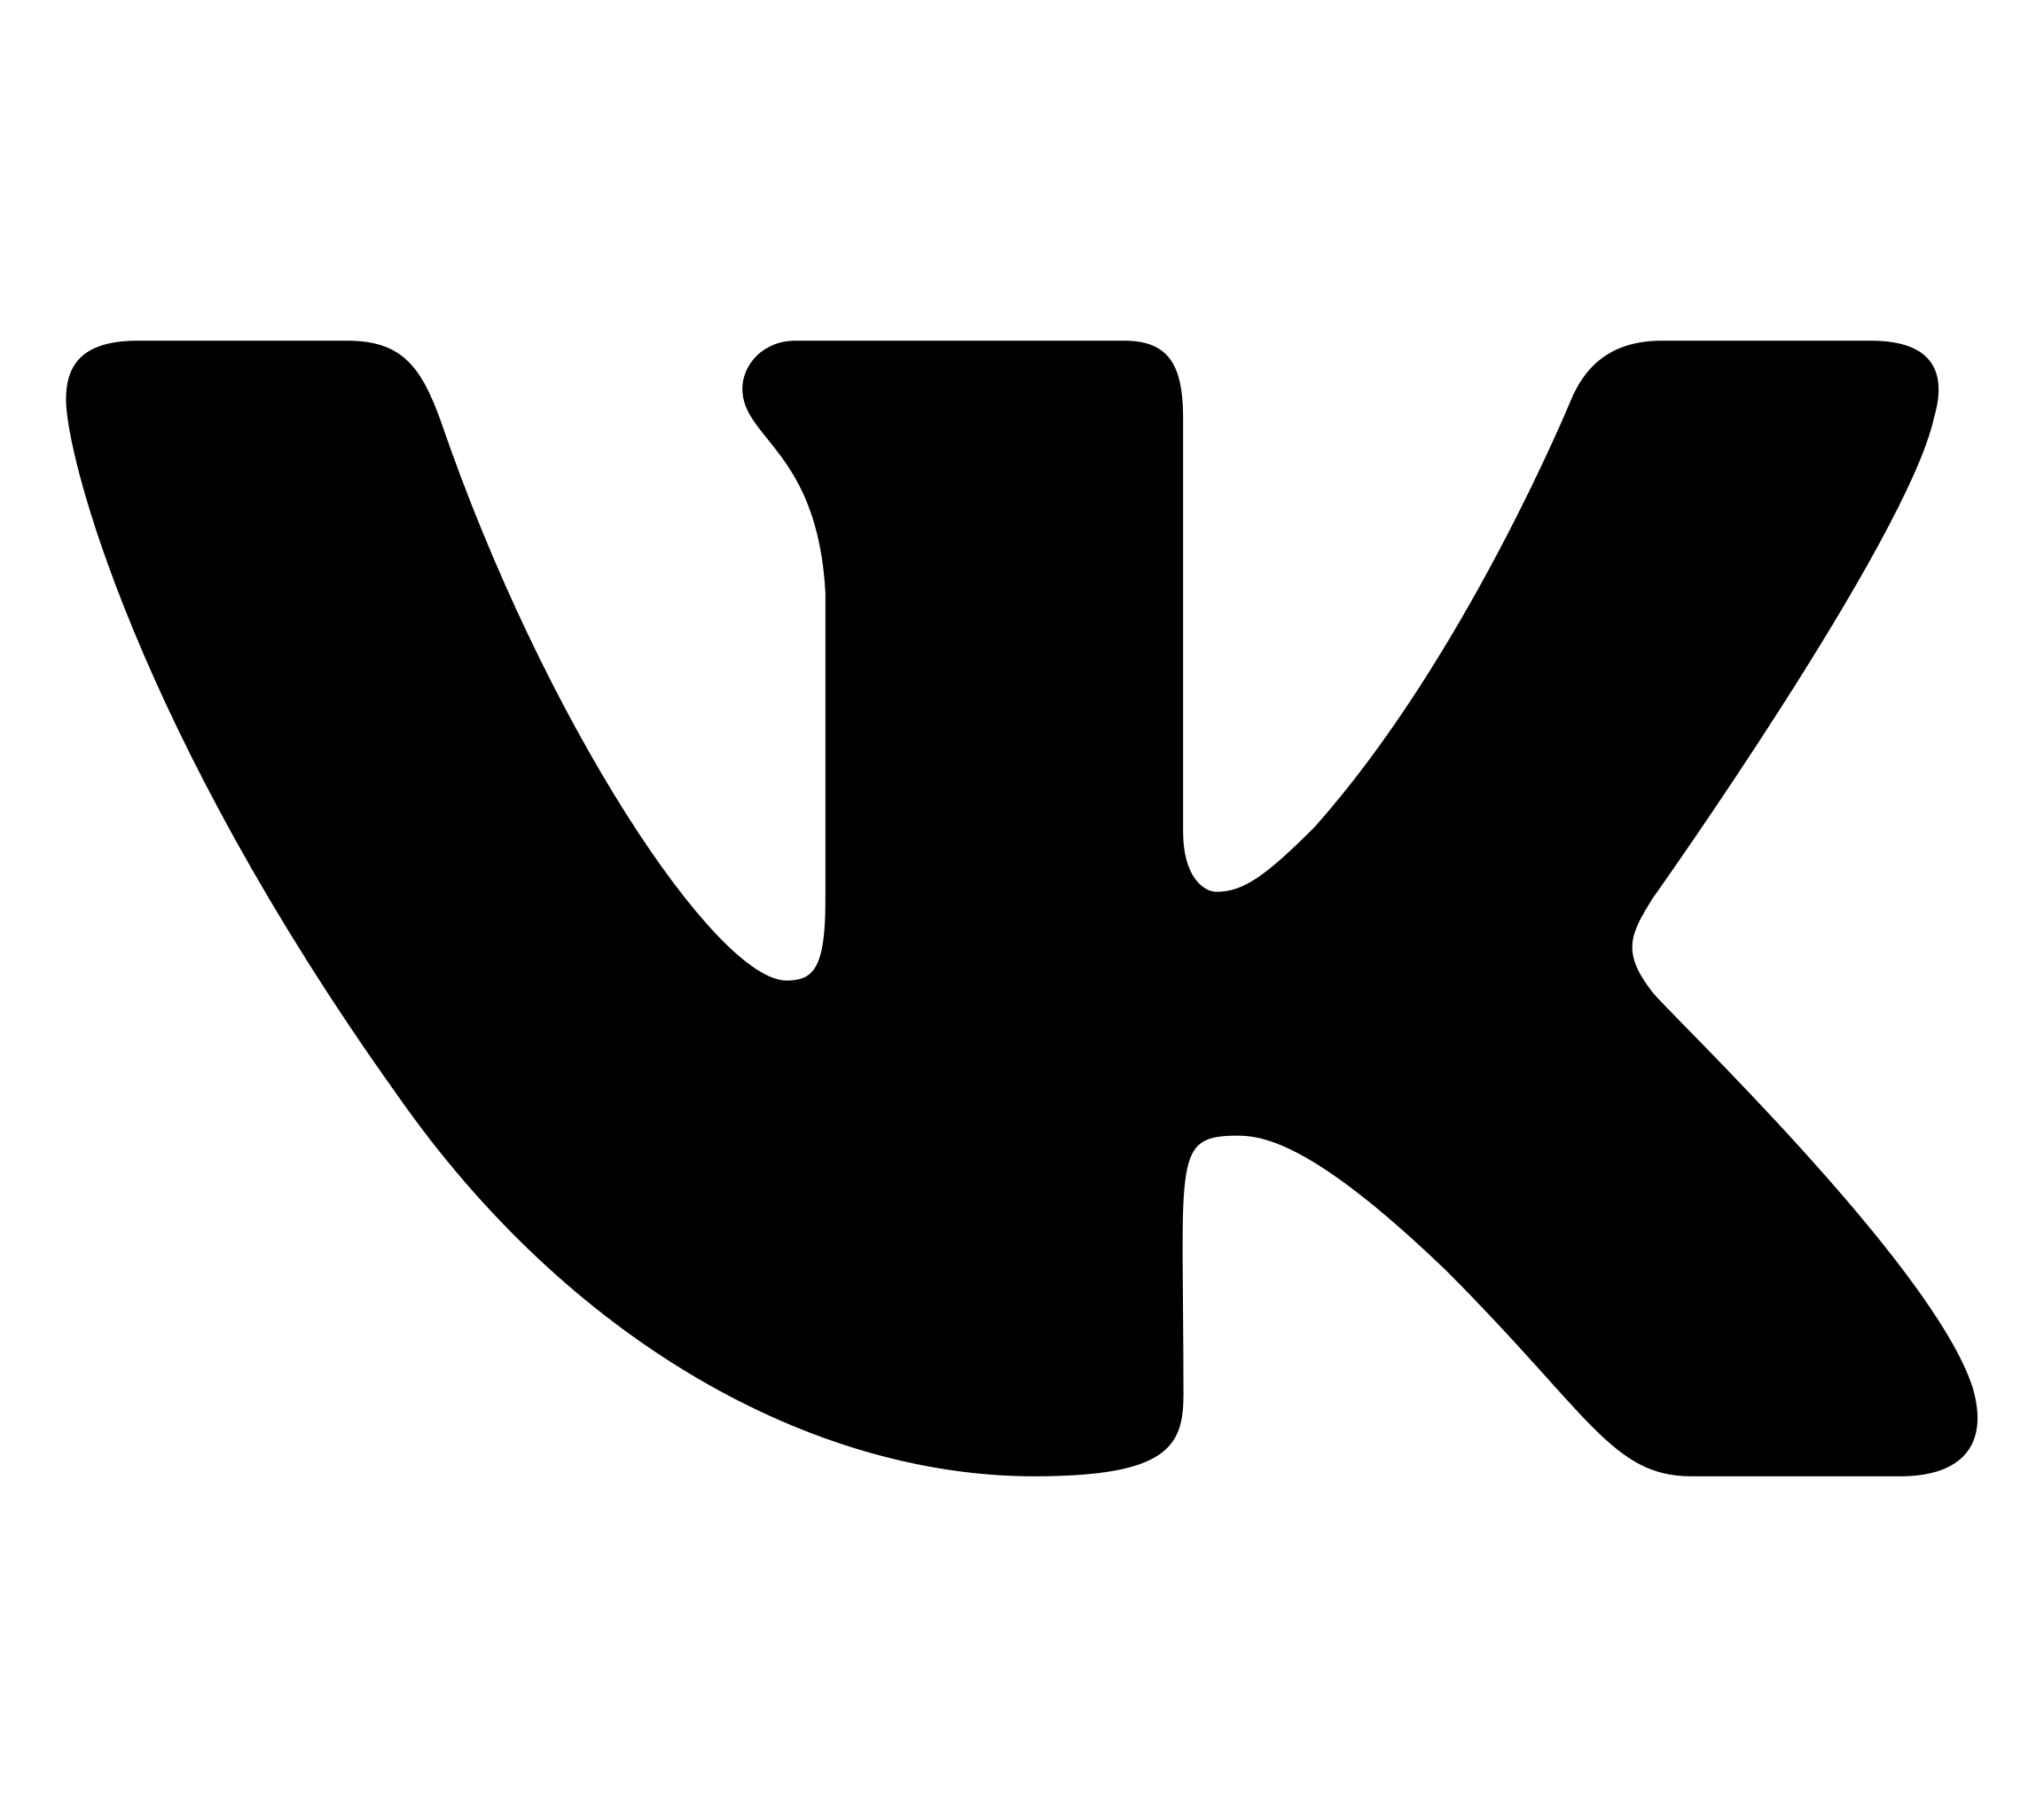 Логотип вк черный. ВКОНТАКТЕ логотип. Значок ВК PNG. Иконка ВК СВГ. Лого ВК Live.